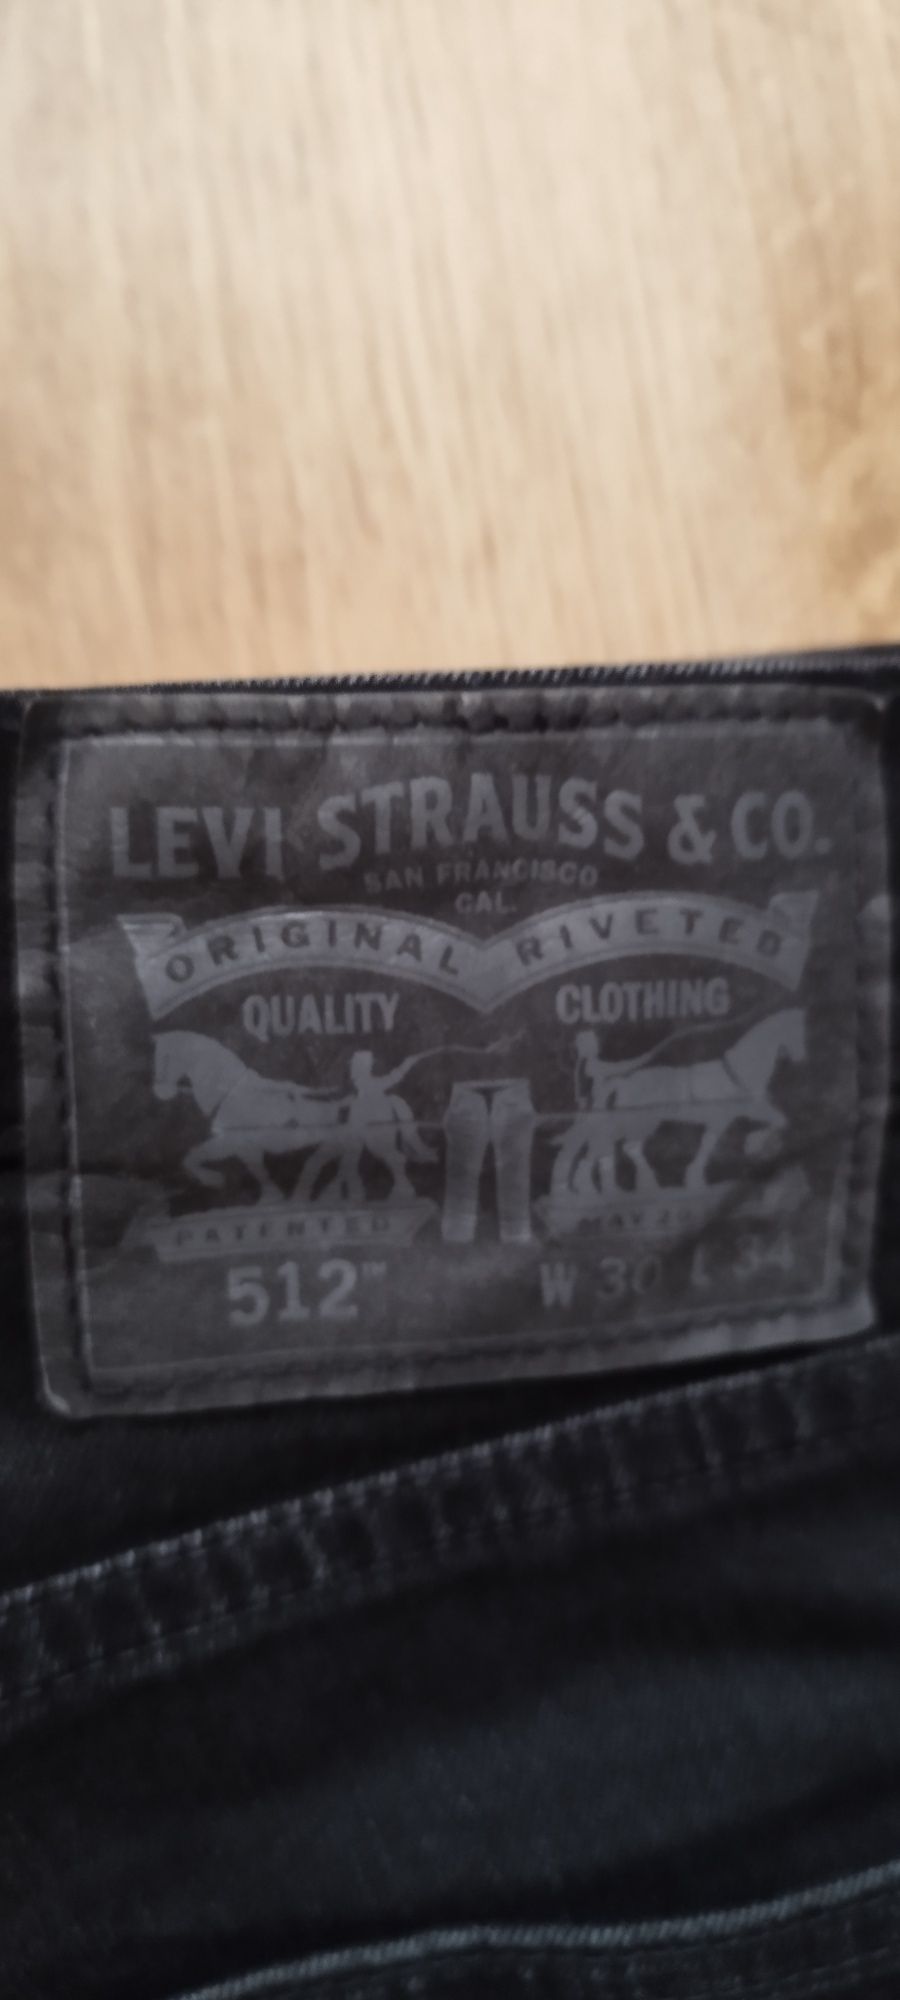 Spodnie Levi's Strauss W30 L34